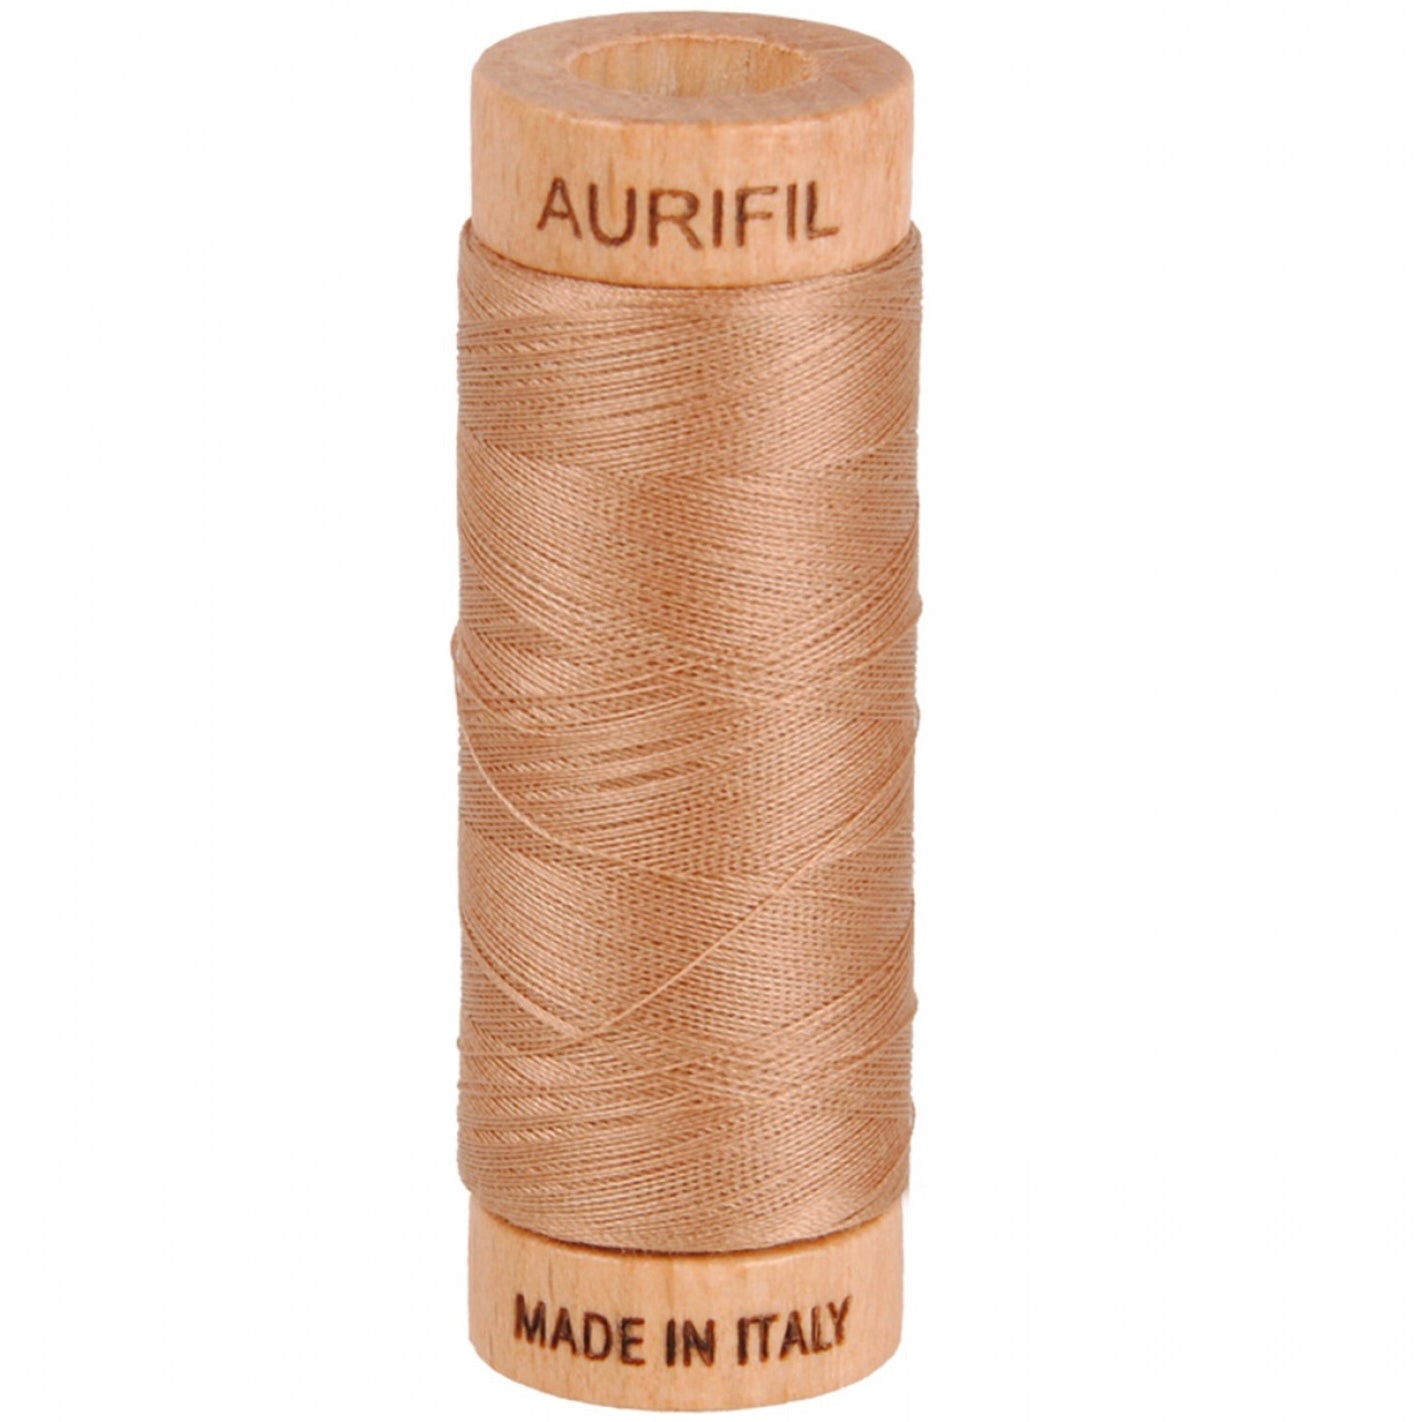 Aurifil Cotton 80wt Thread - 280 mt - 2340 - Cafe au Lait